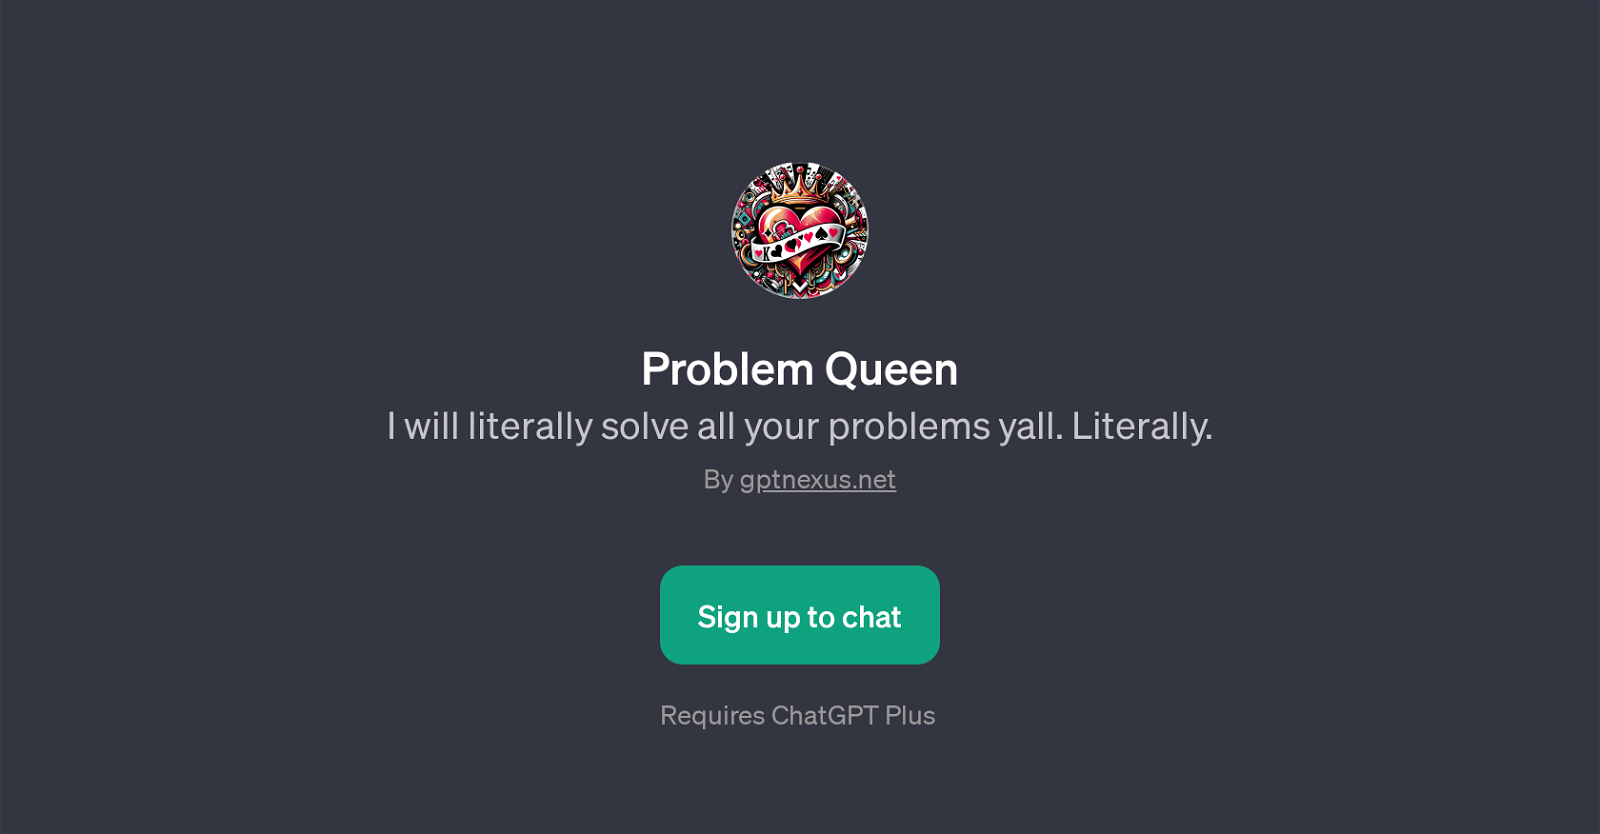 Problem Queen website